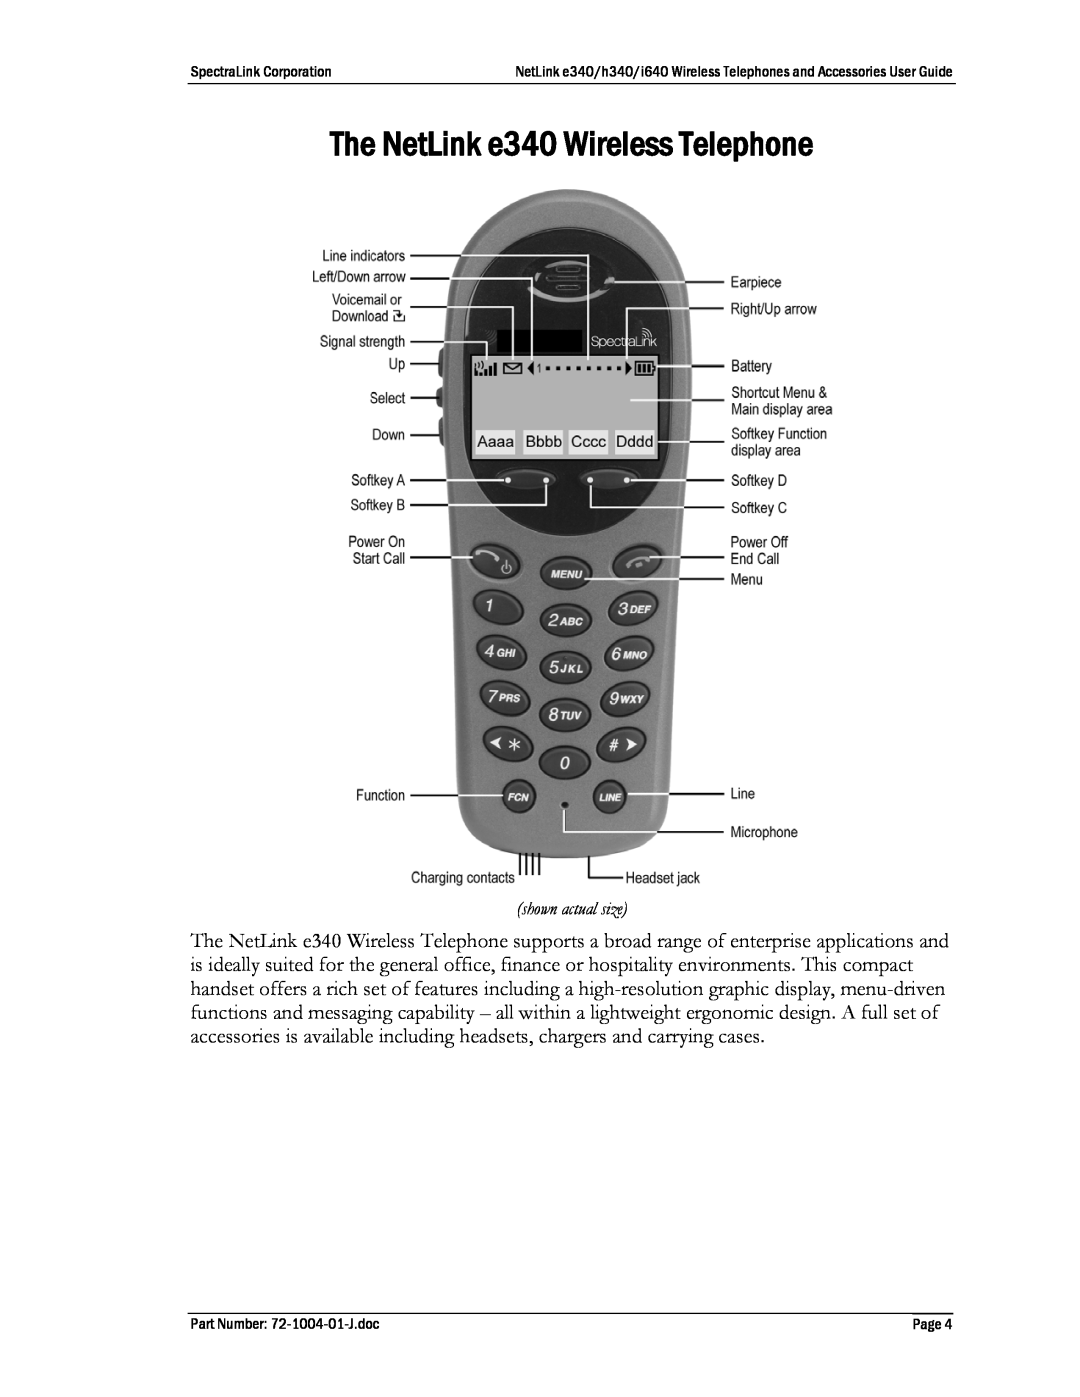 Polycom BPN100, BPX100, GCN100, DCX200, DCX100, s640, s340, 72-1004-01 The NetLink e340 Wireless Telephone, shown actual size 